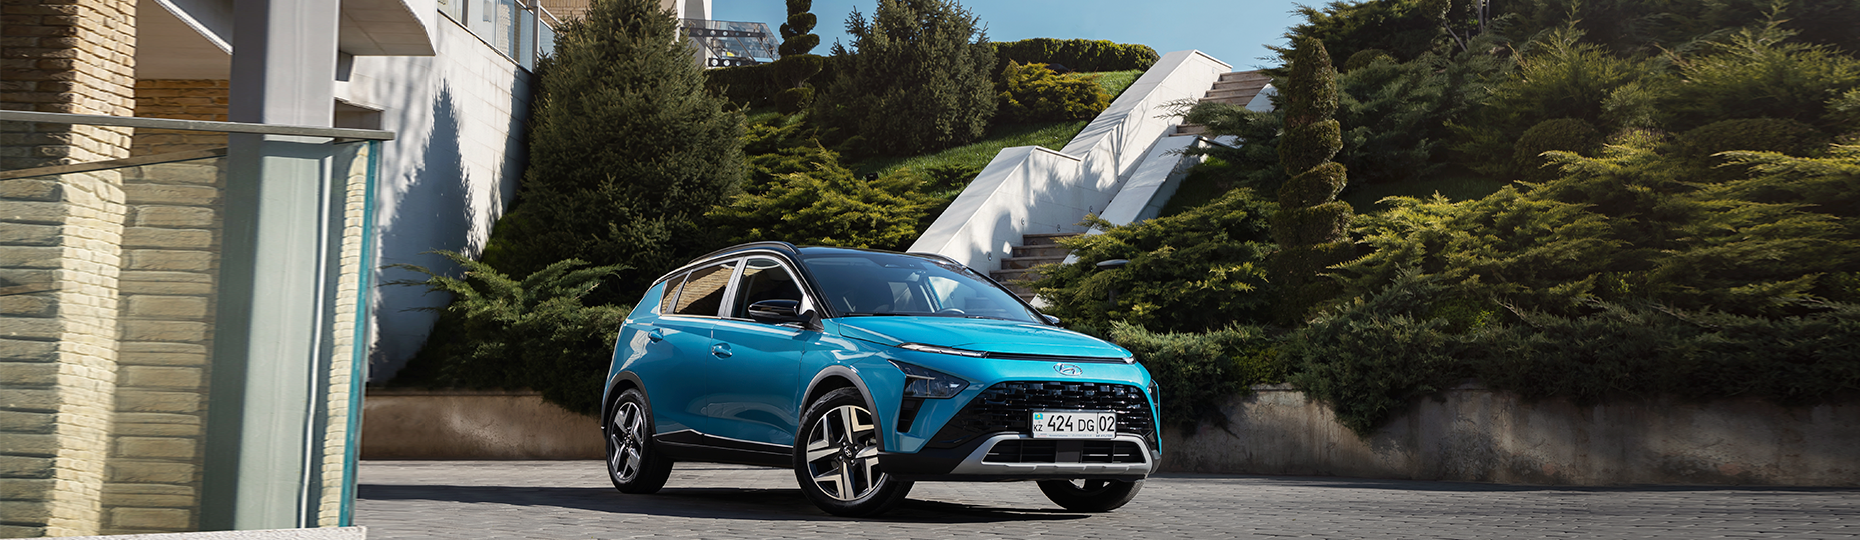 Комфорт нового Hyundai Bayon | Официальный дилер в Алматы